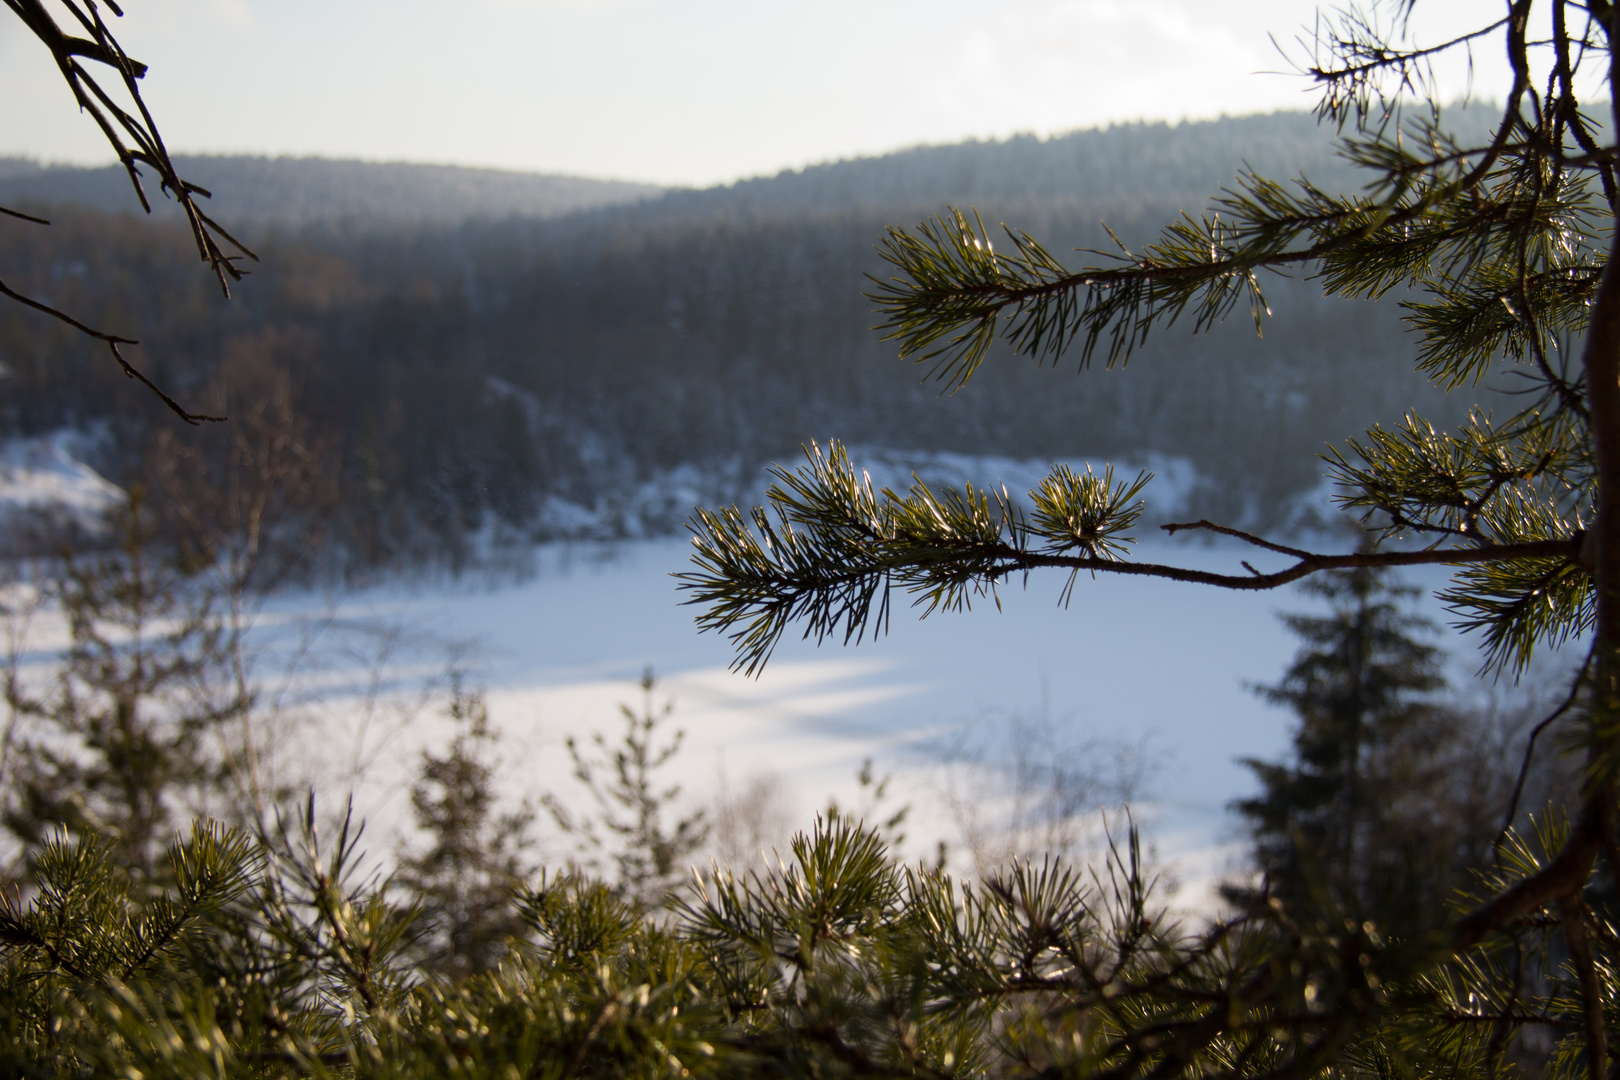 Nadelbaum mit zugefrorenem See im Hintergrund